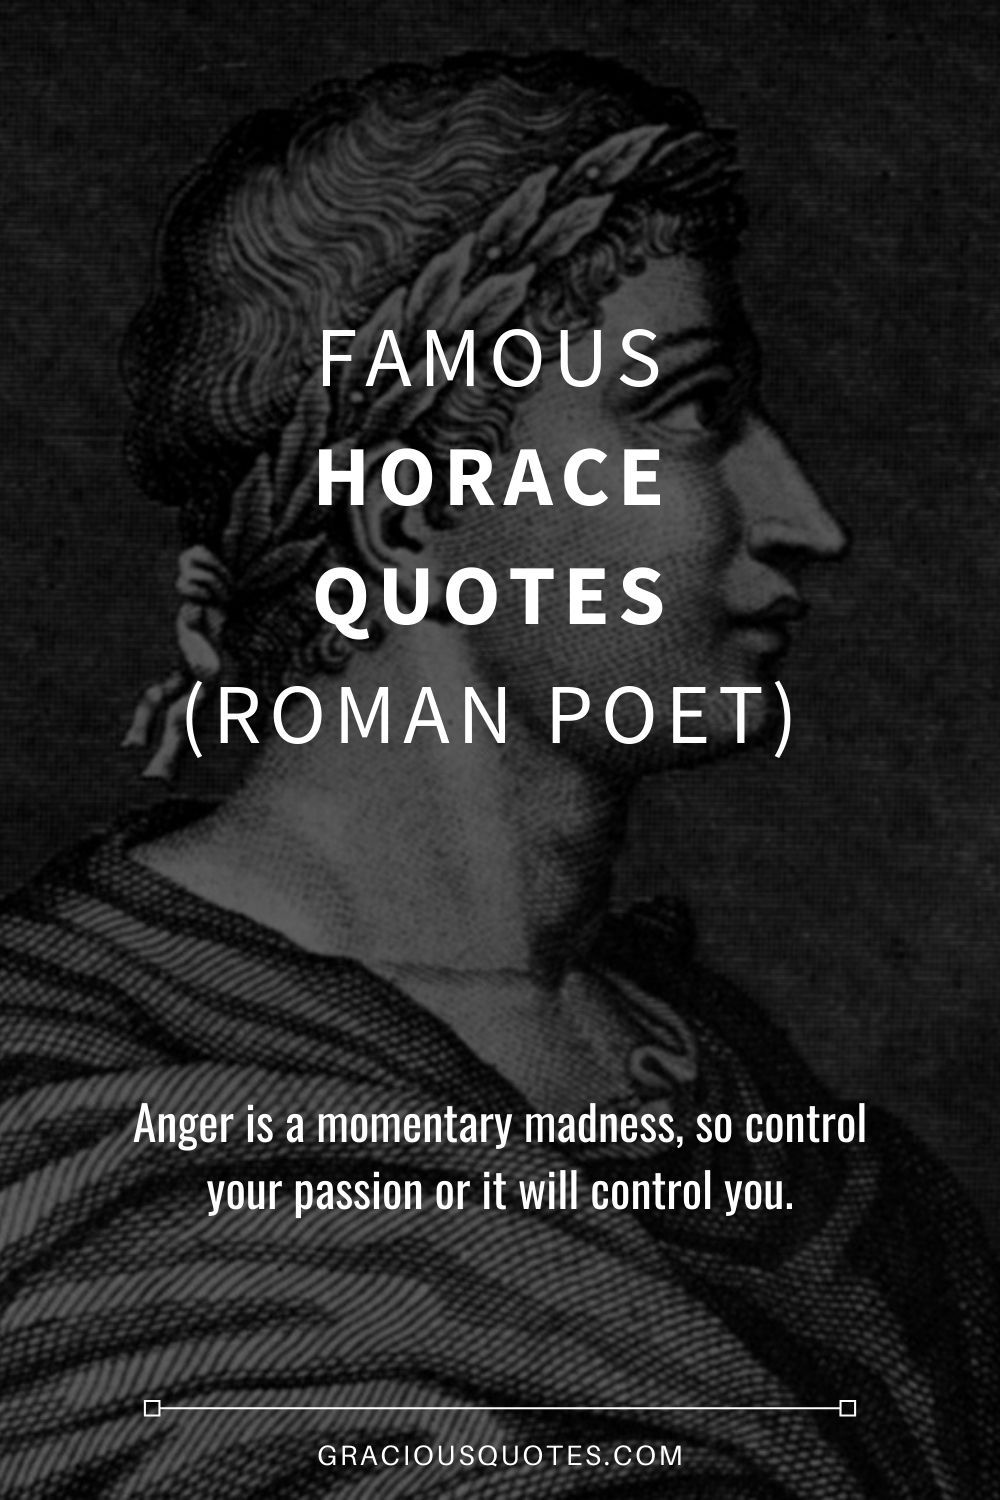 Famous Horace Quotes (ROMAN POET) - Gracious Quotes